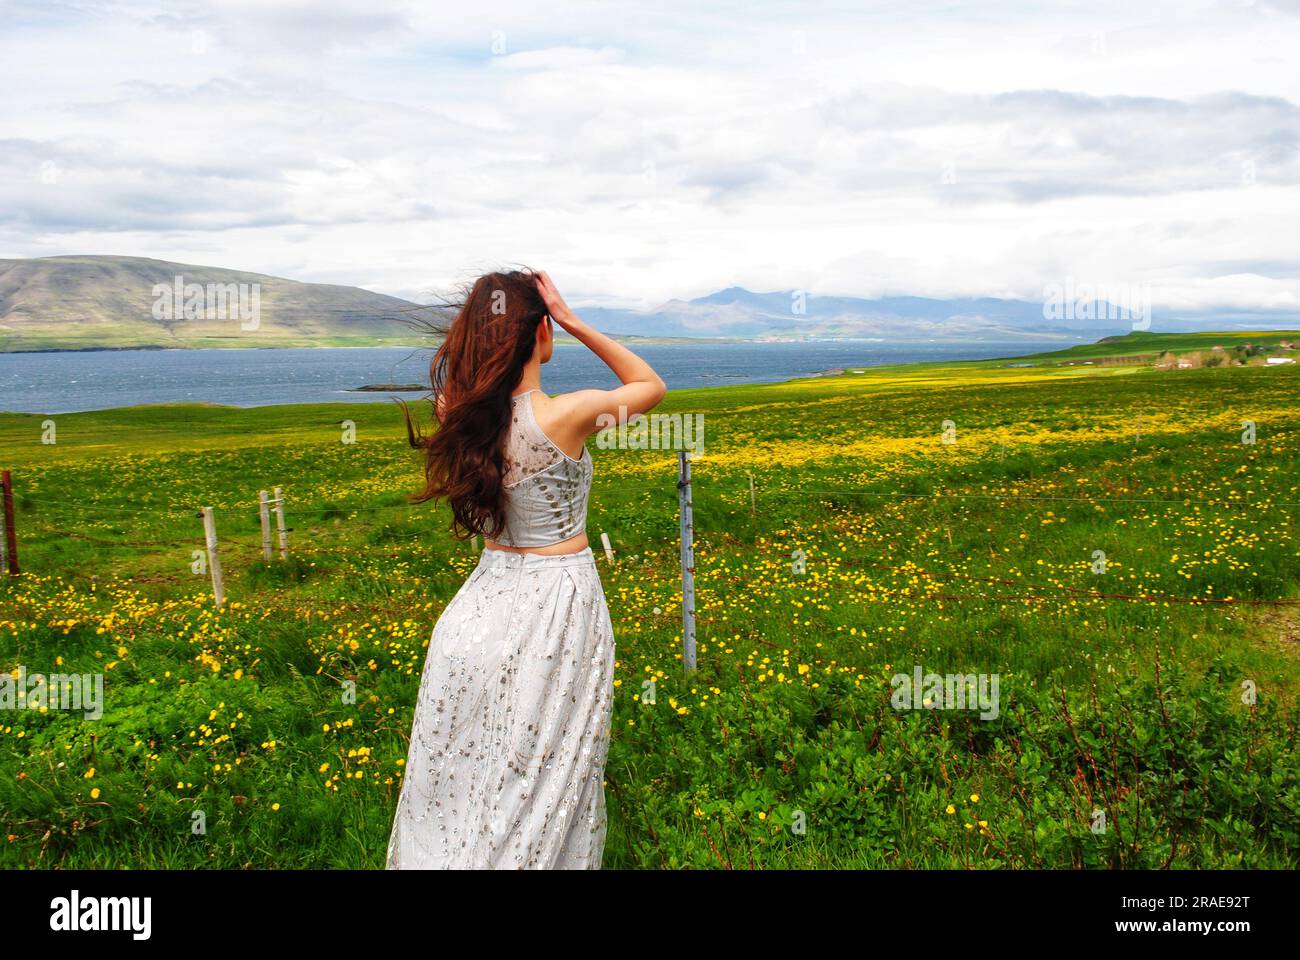 Une femme dans une robe argentée étincelante regarde les fleurs jaunes dans un champ près de Mossfellsbaer, en Islande. Banque D'Images